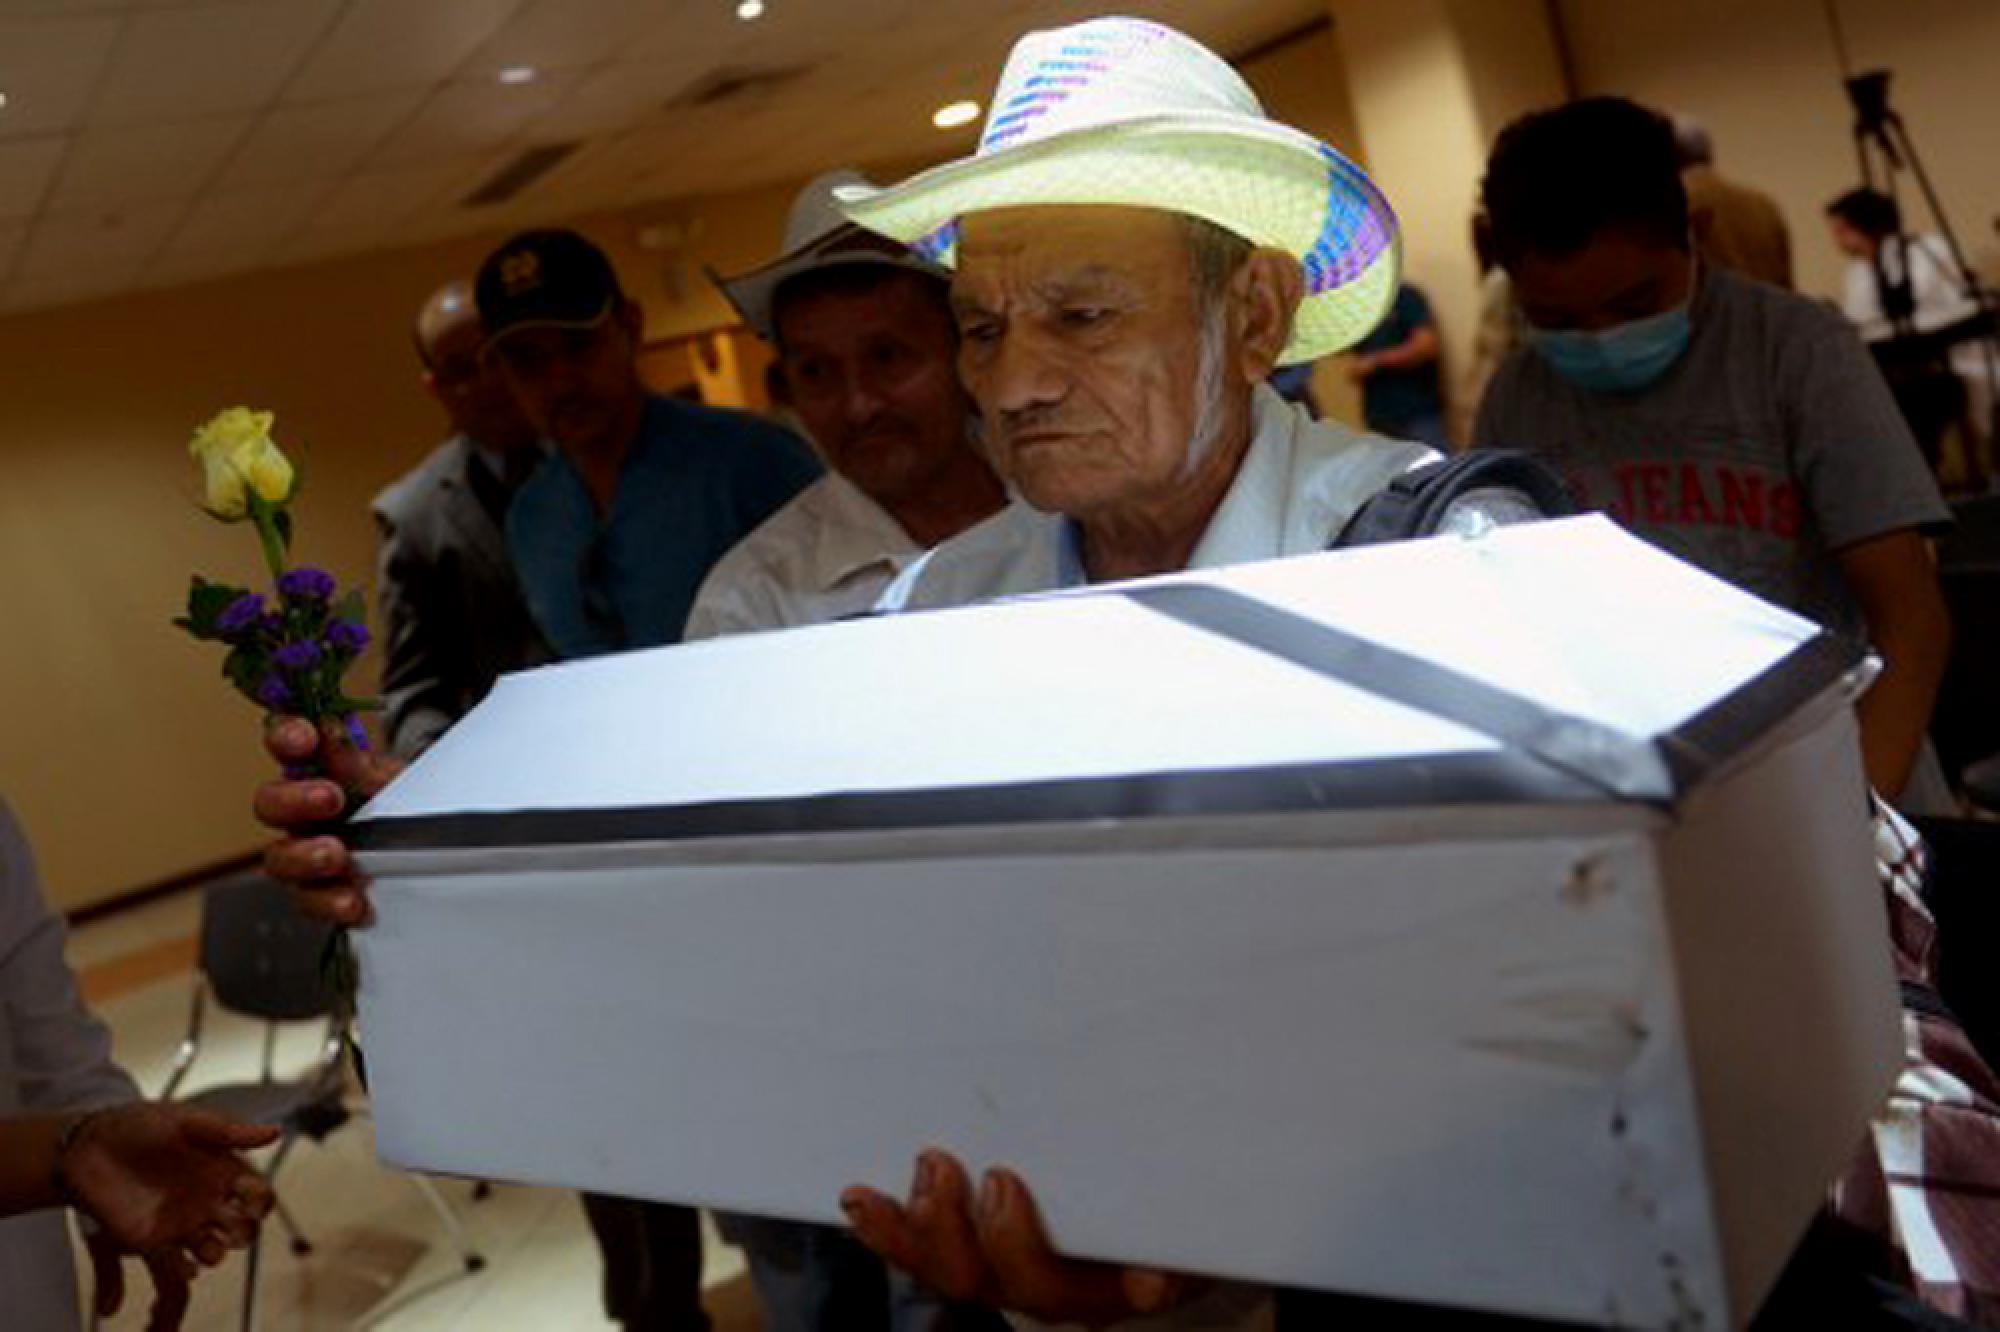 El 20 de mayo de 2016, la Corte Suprema de Justicia entregó los restos exhumados de 11 víctimas de la masacre de El Mozote. En diciembre de 1981, miembros del Batallón Atlacatl, un cuerpo élite entrenado por Estados Unidos, lideró la masacre de 978 campesinos. Foto AFP | Marvin Recinos.